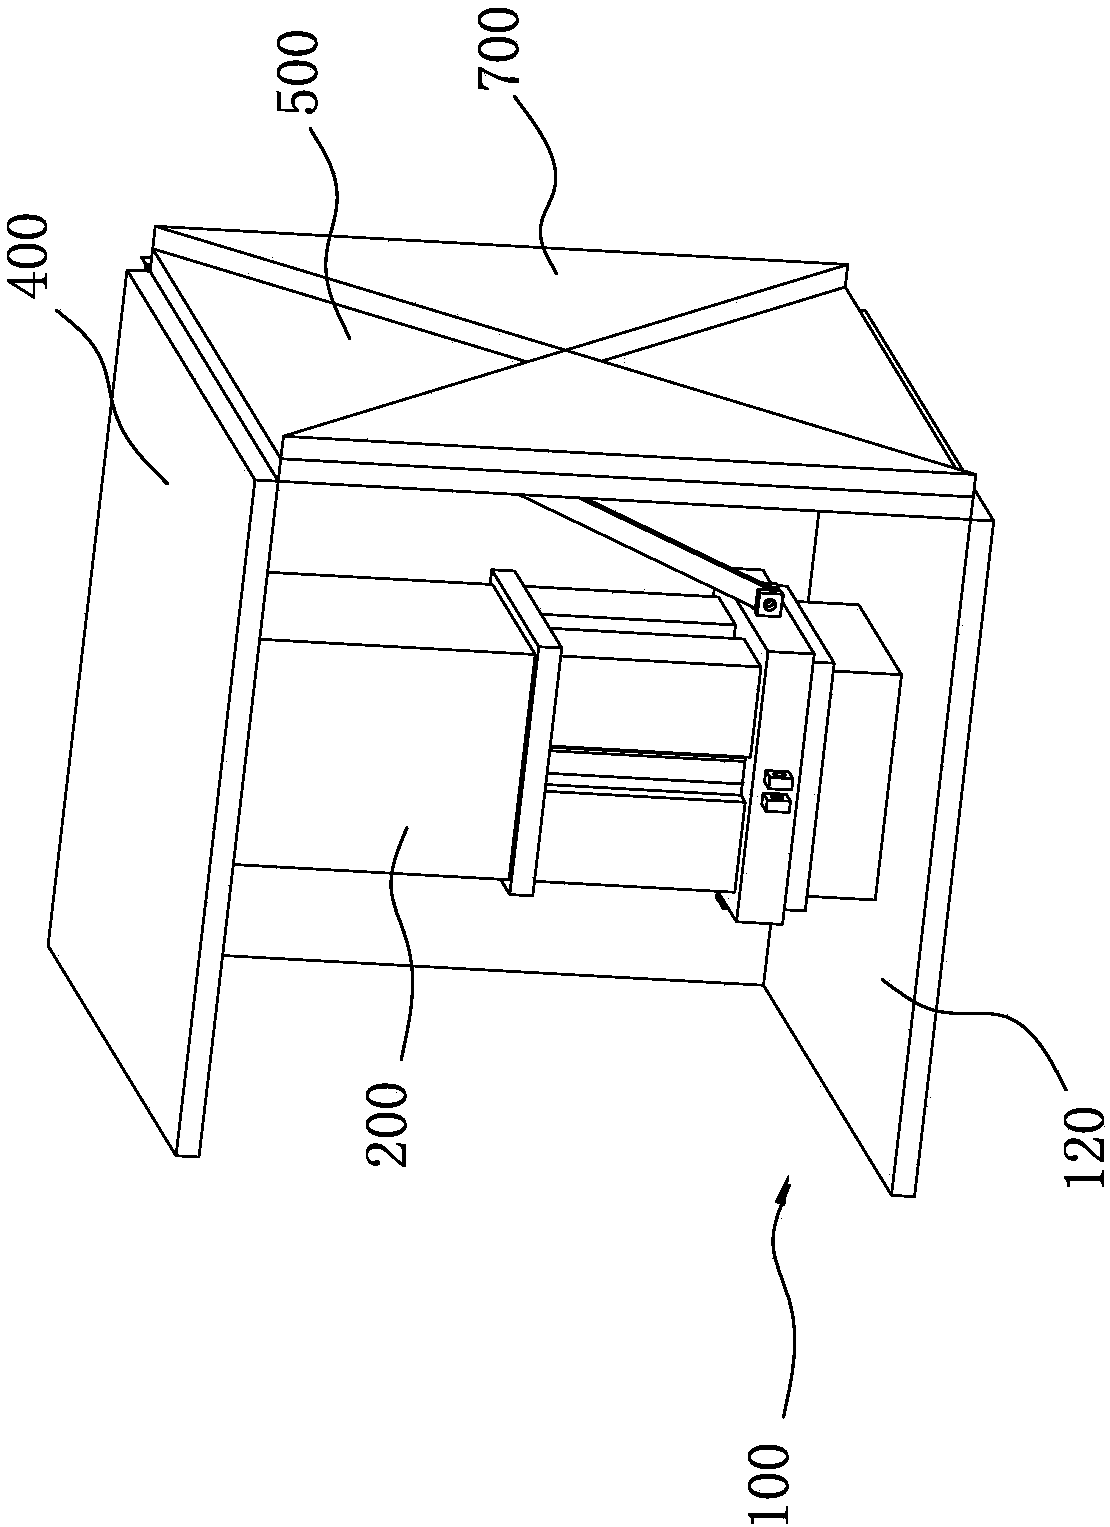 Semi-automatic foldable table